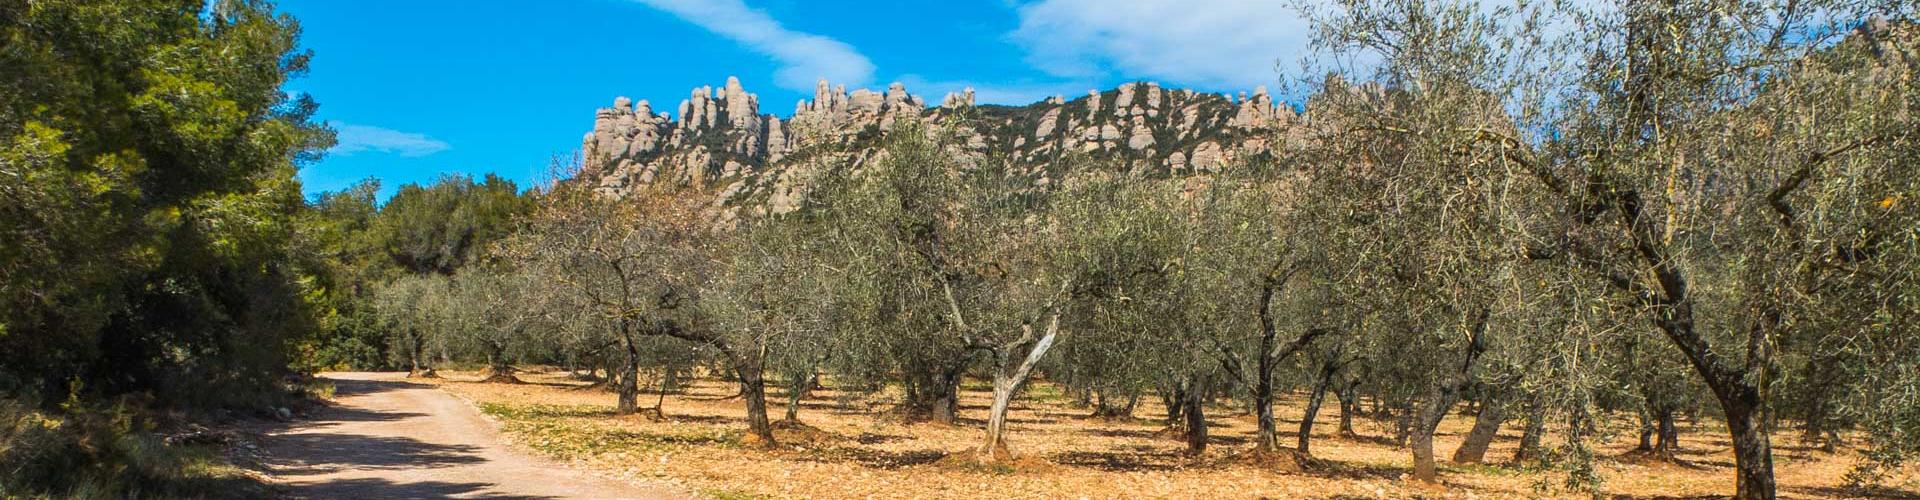 Camps d'oliveres als peus de la muntanya de Montserrat. El Bruc.